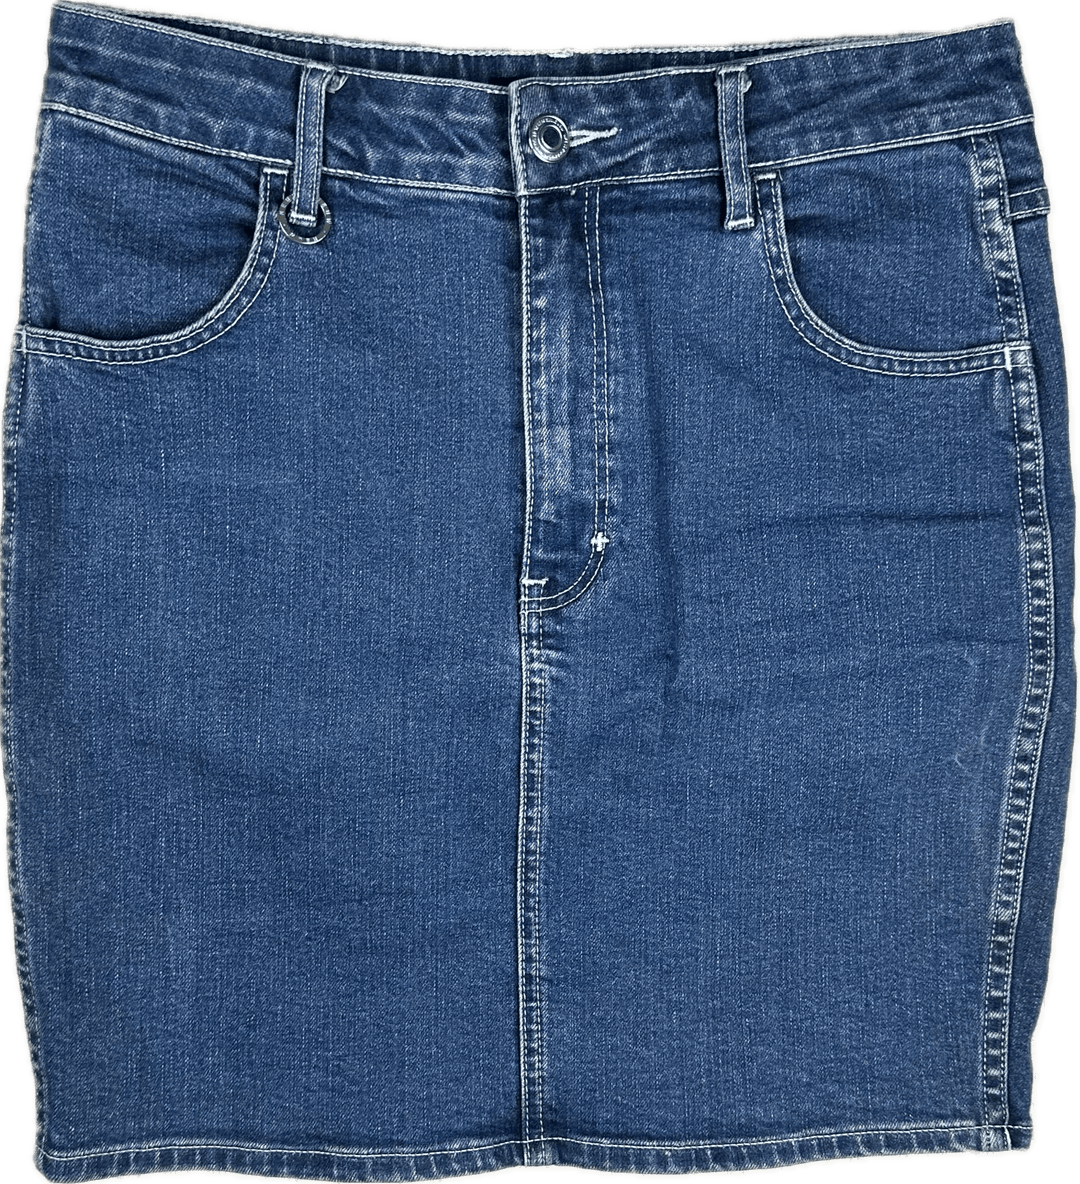 Neuw Denim Stretch Jeans Skirt - Size 11 - Jean Pool